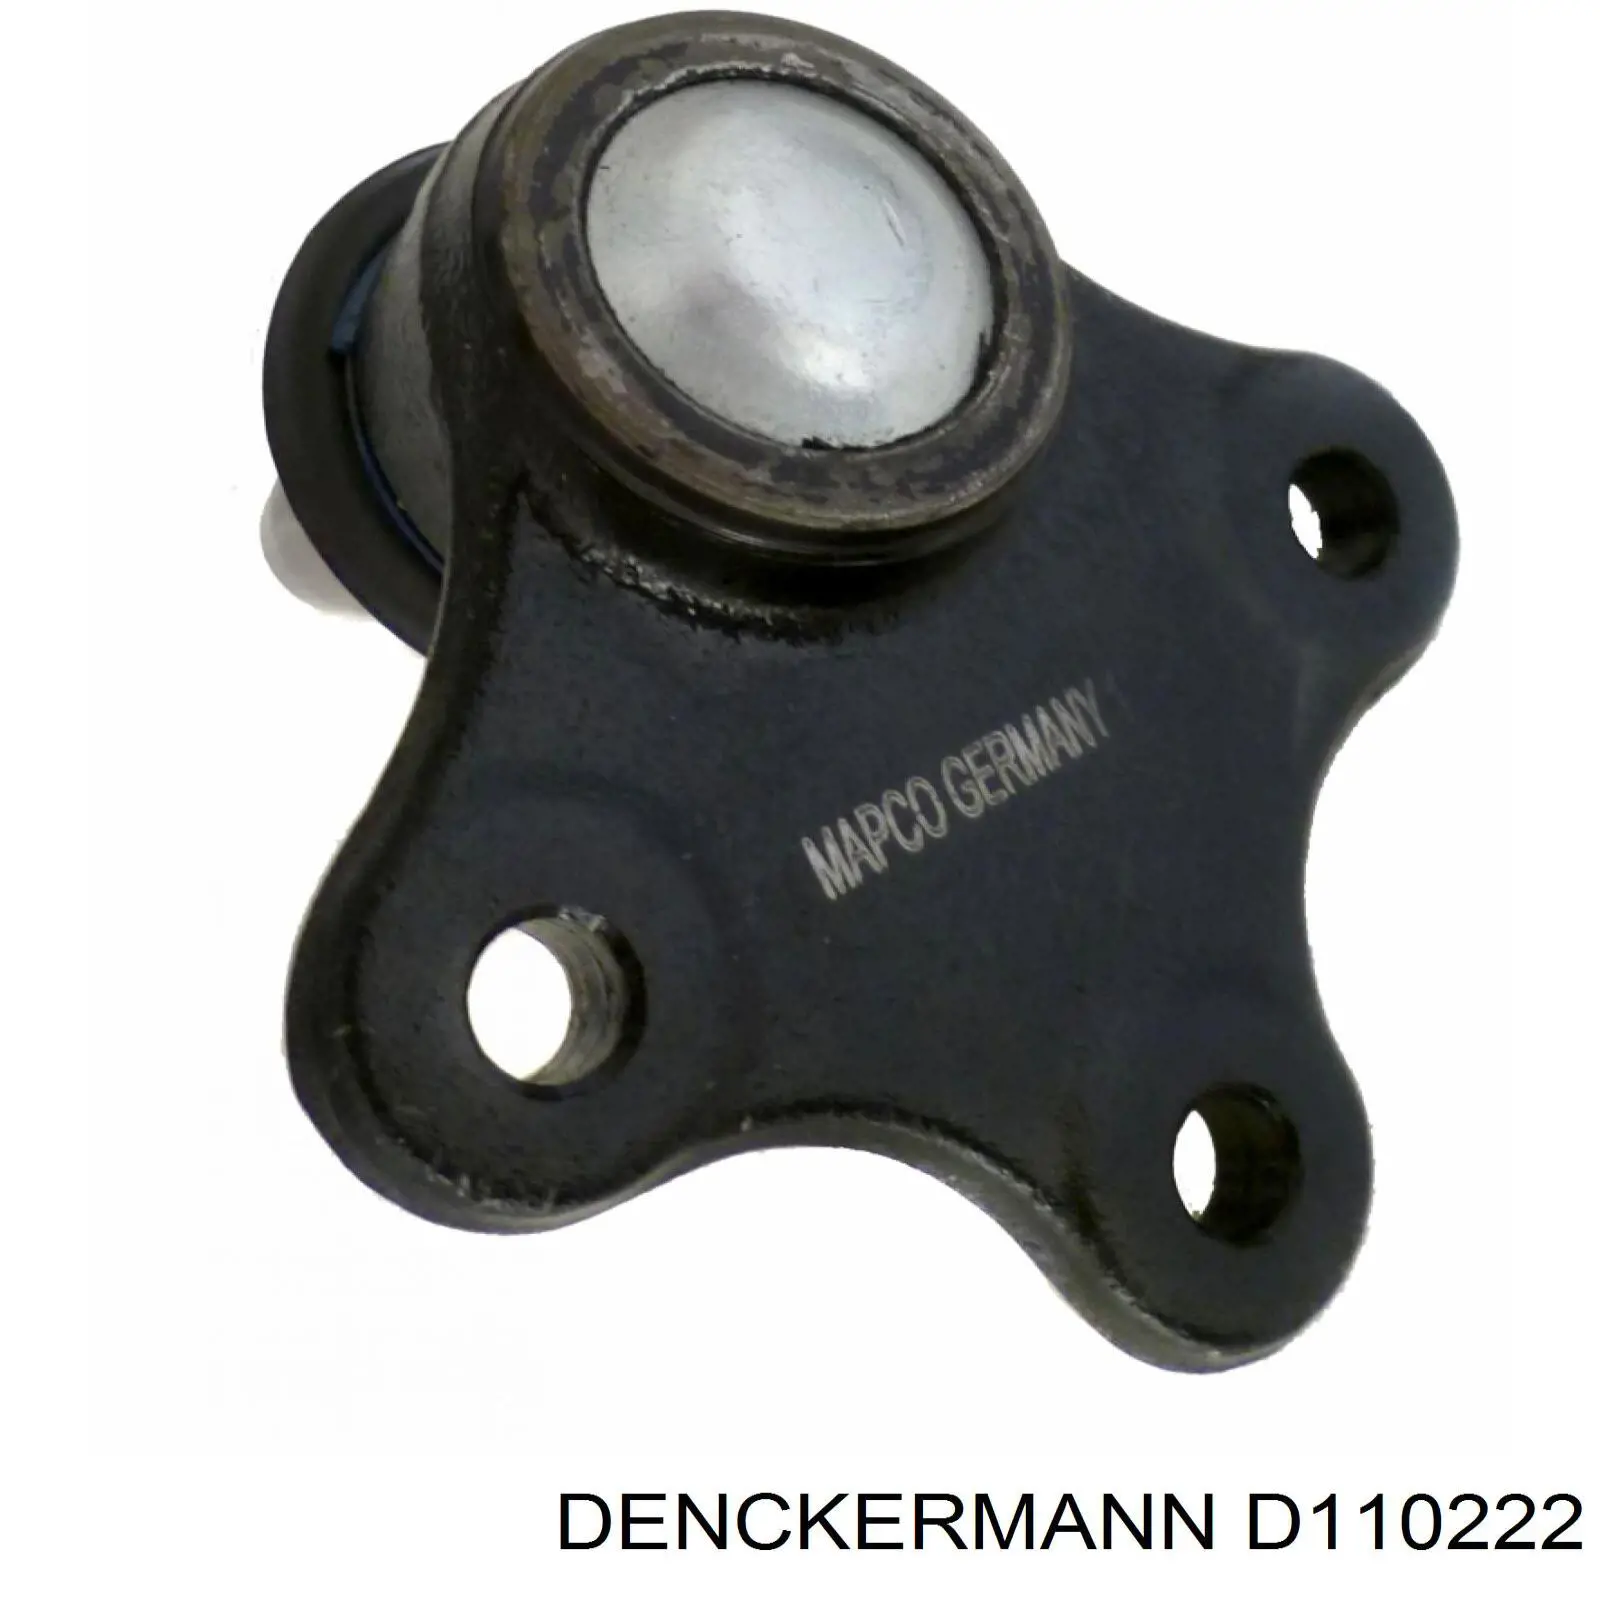 D110222 Denckermann rótula de suspensión inferior